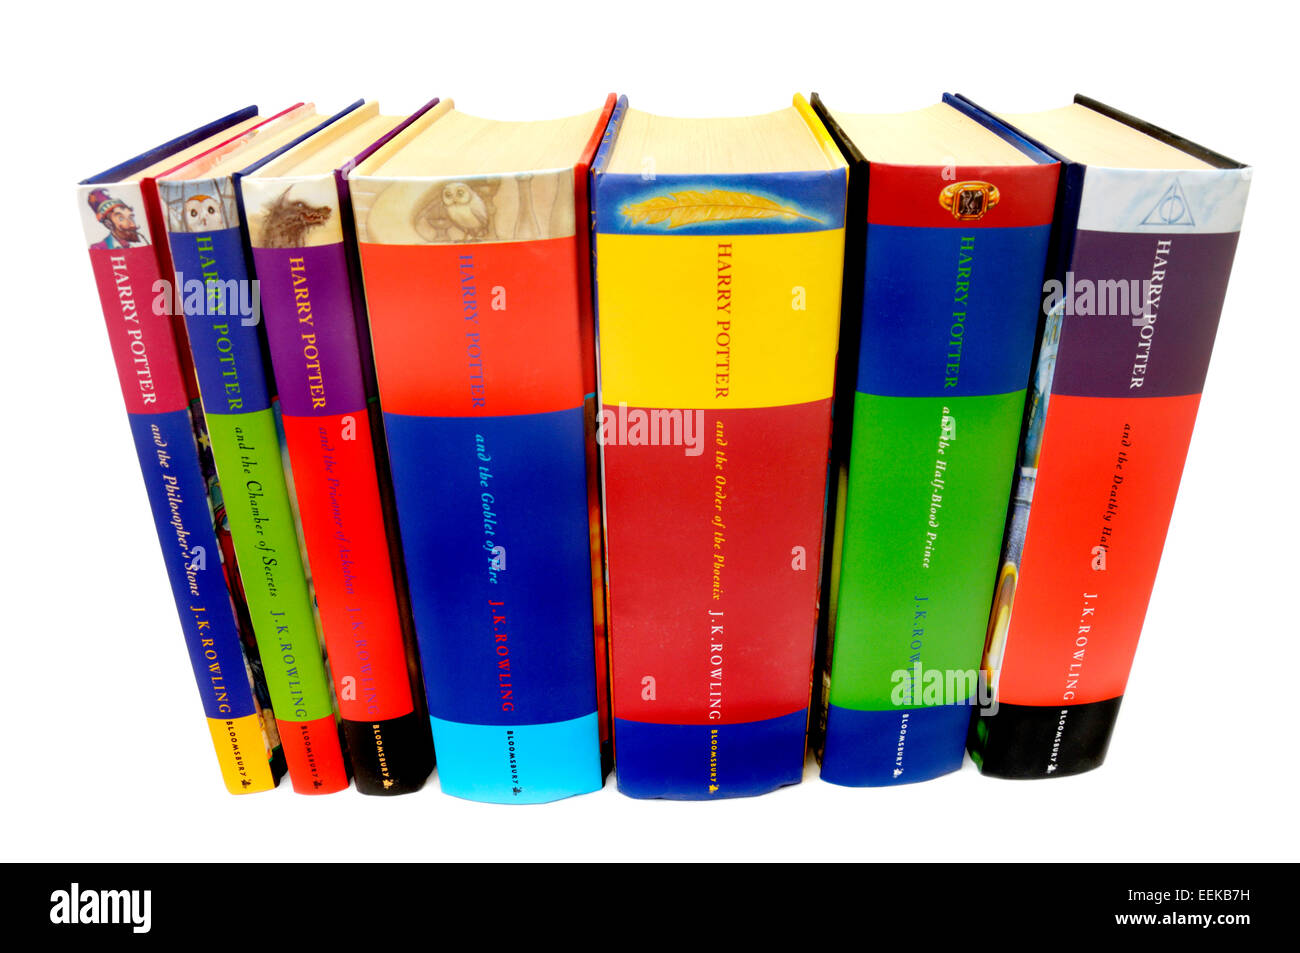 Harry Potter books 1-7 in hardback Stock Photo